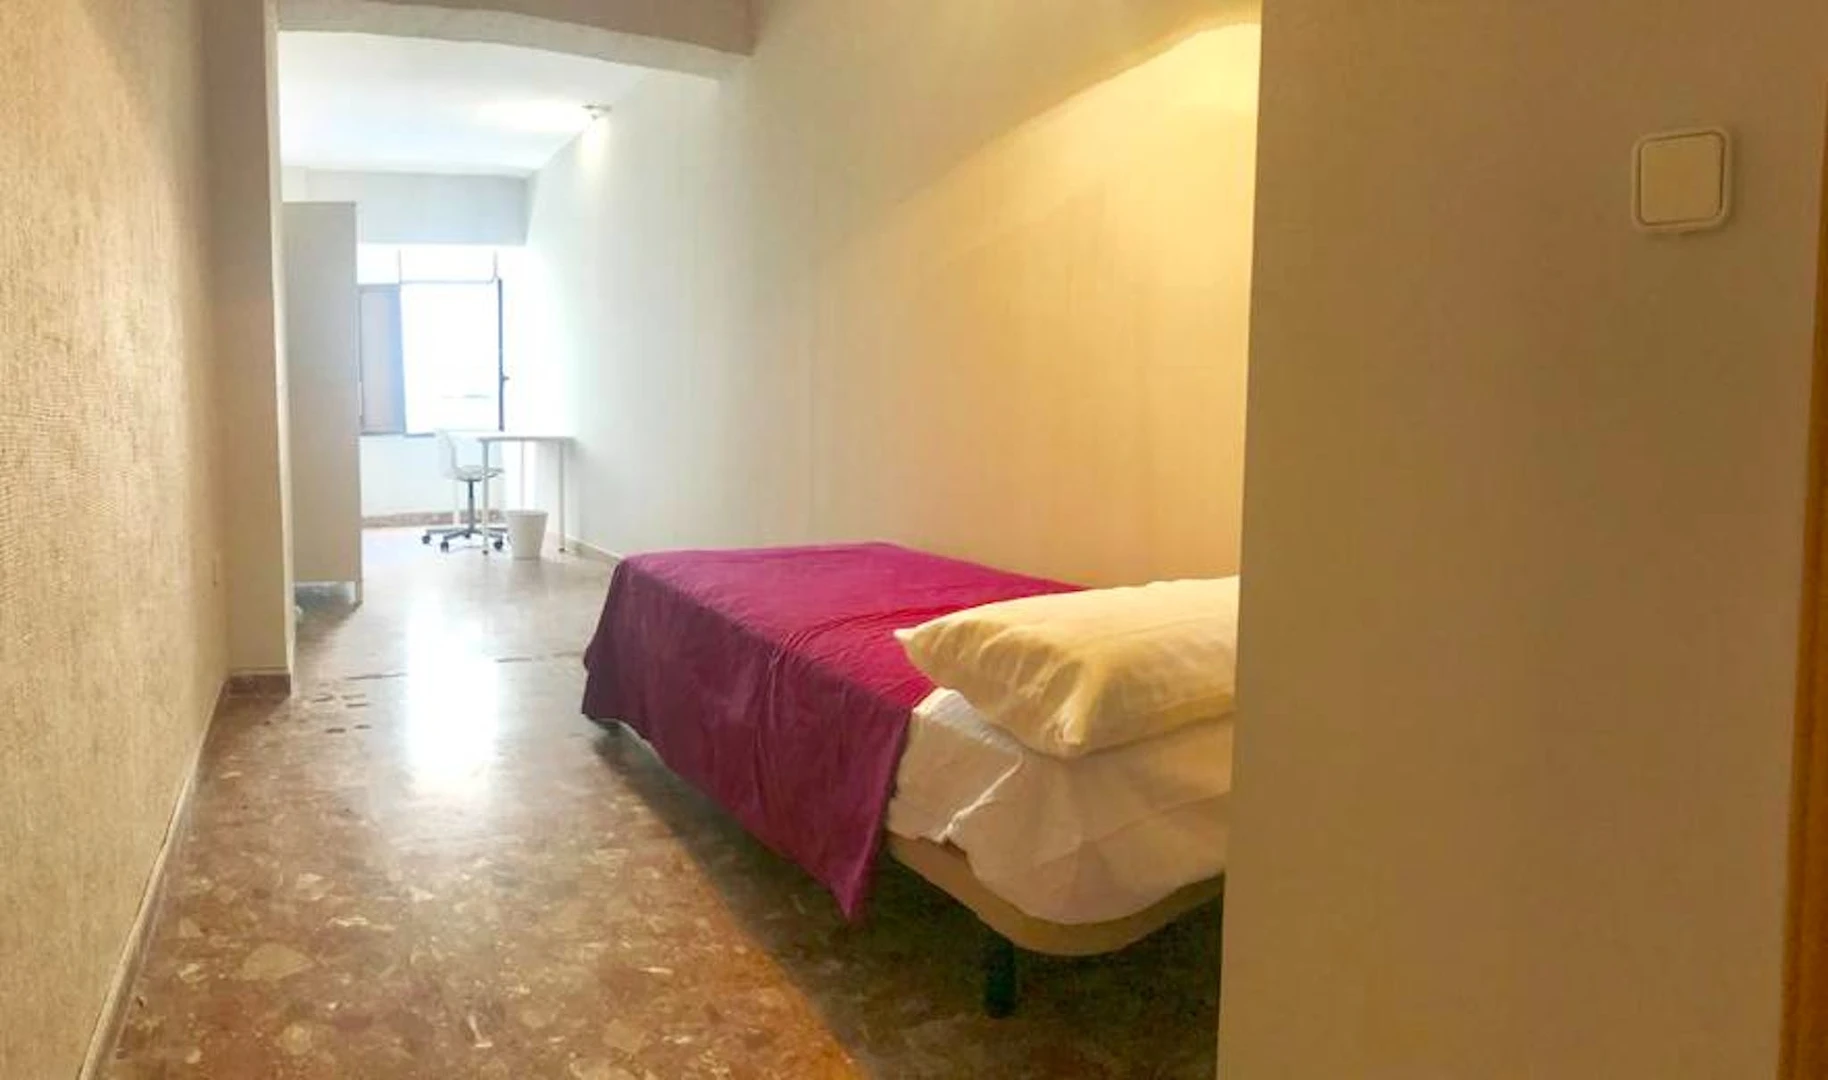 Alquiler de habitación en piso compartido en Córdoba